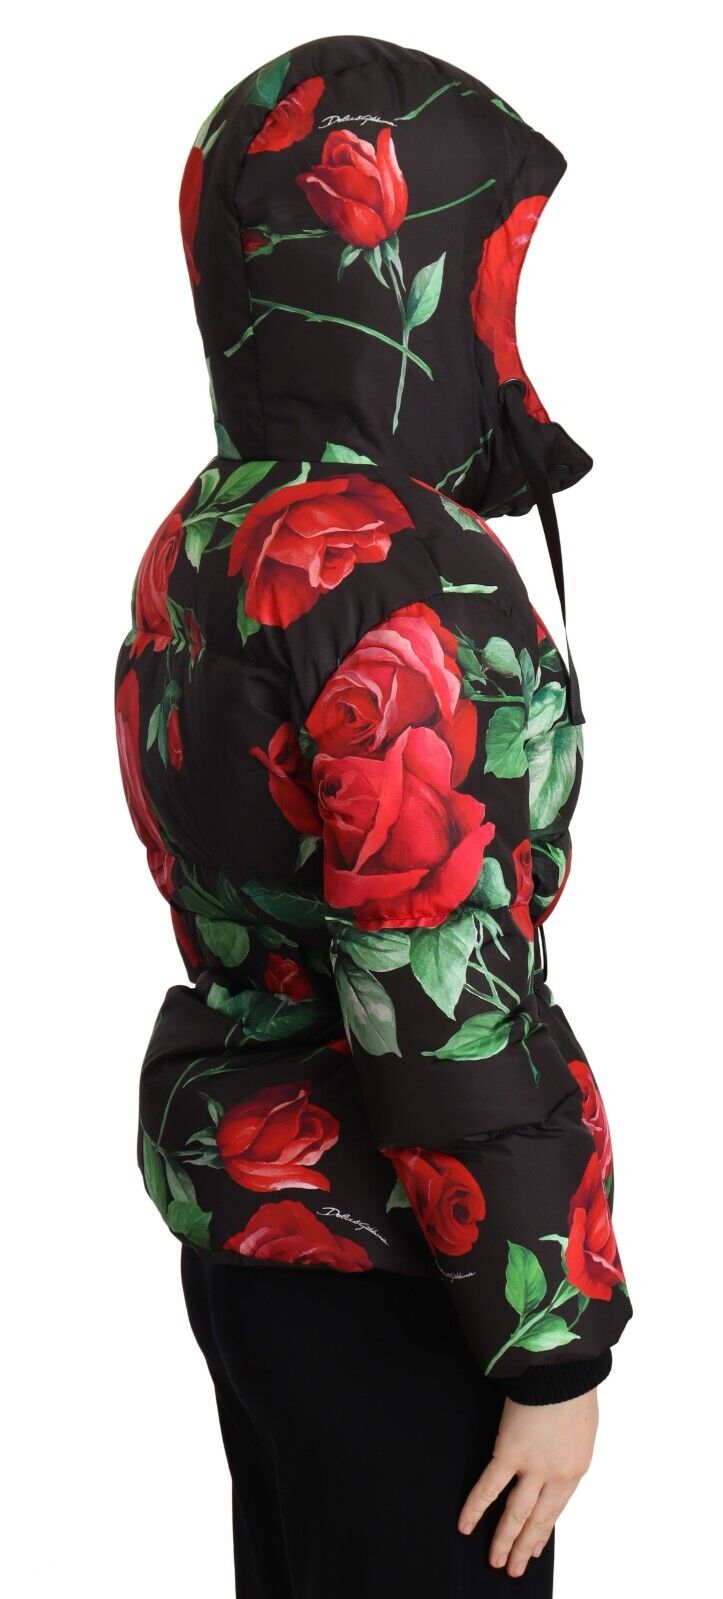 Black Roses Floral Parka Hooded Jacket